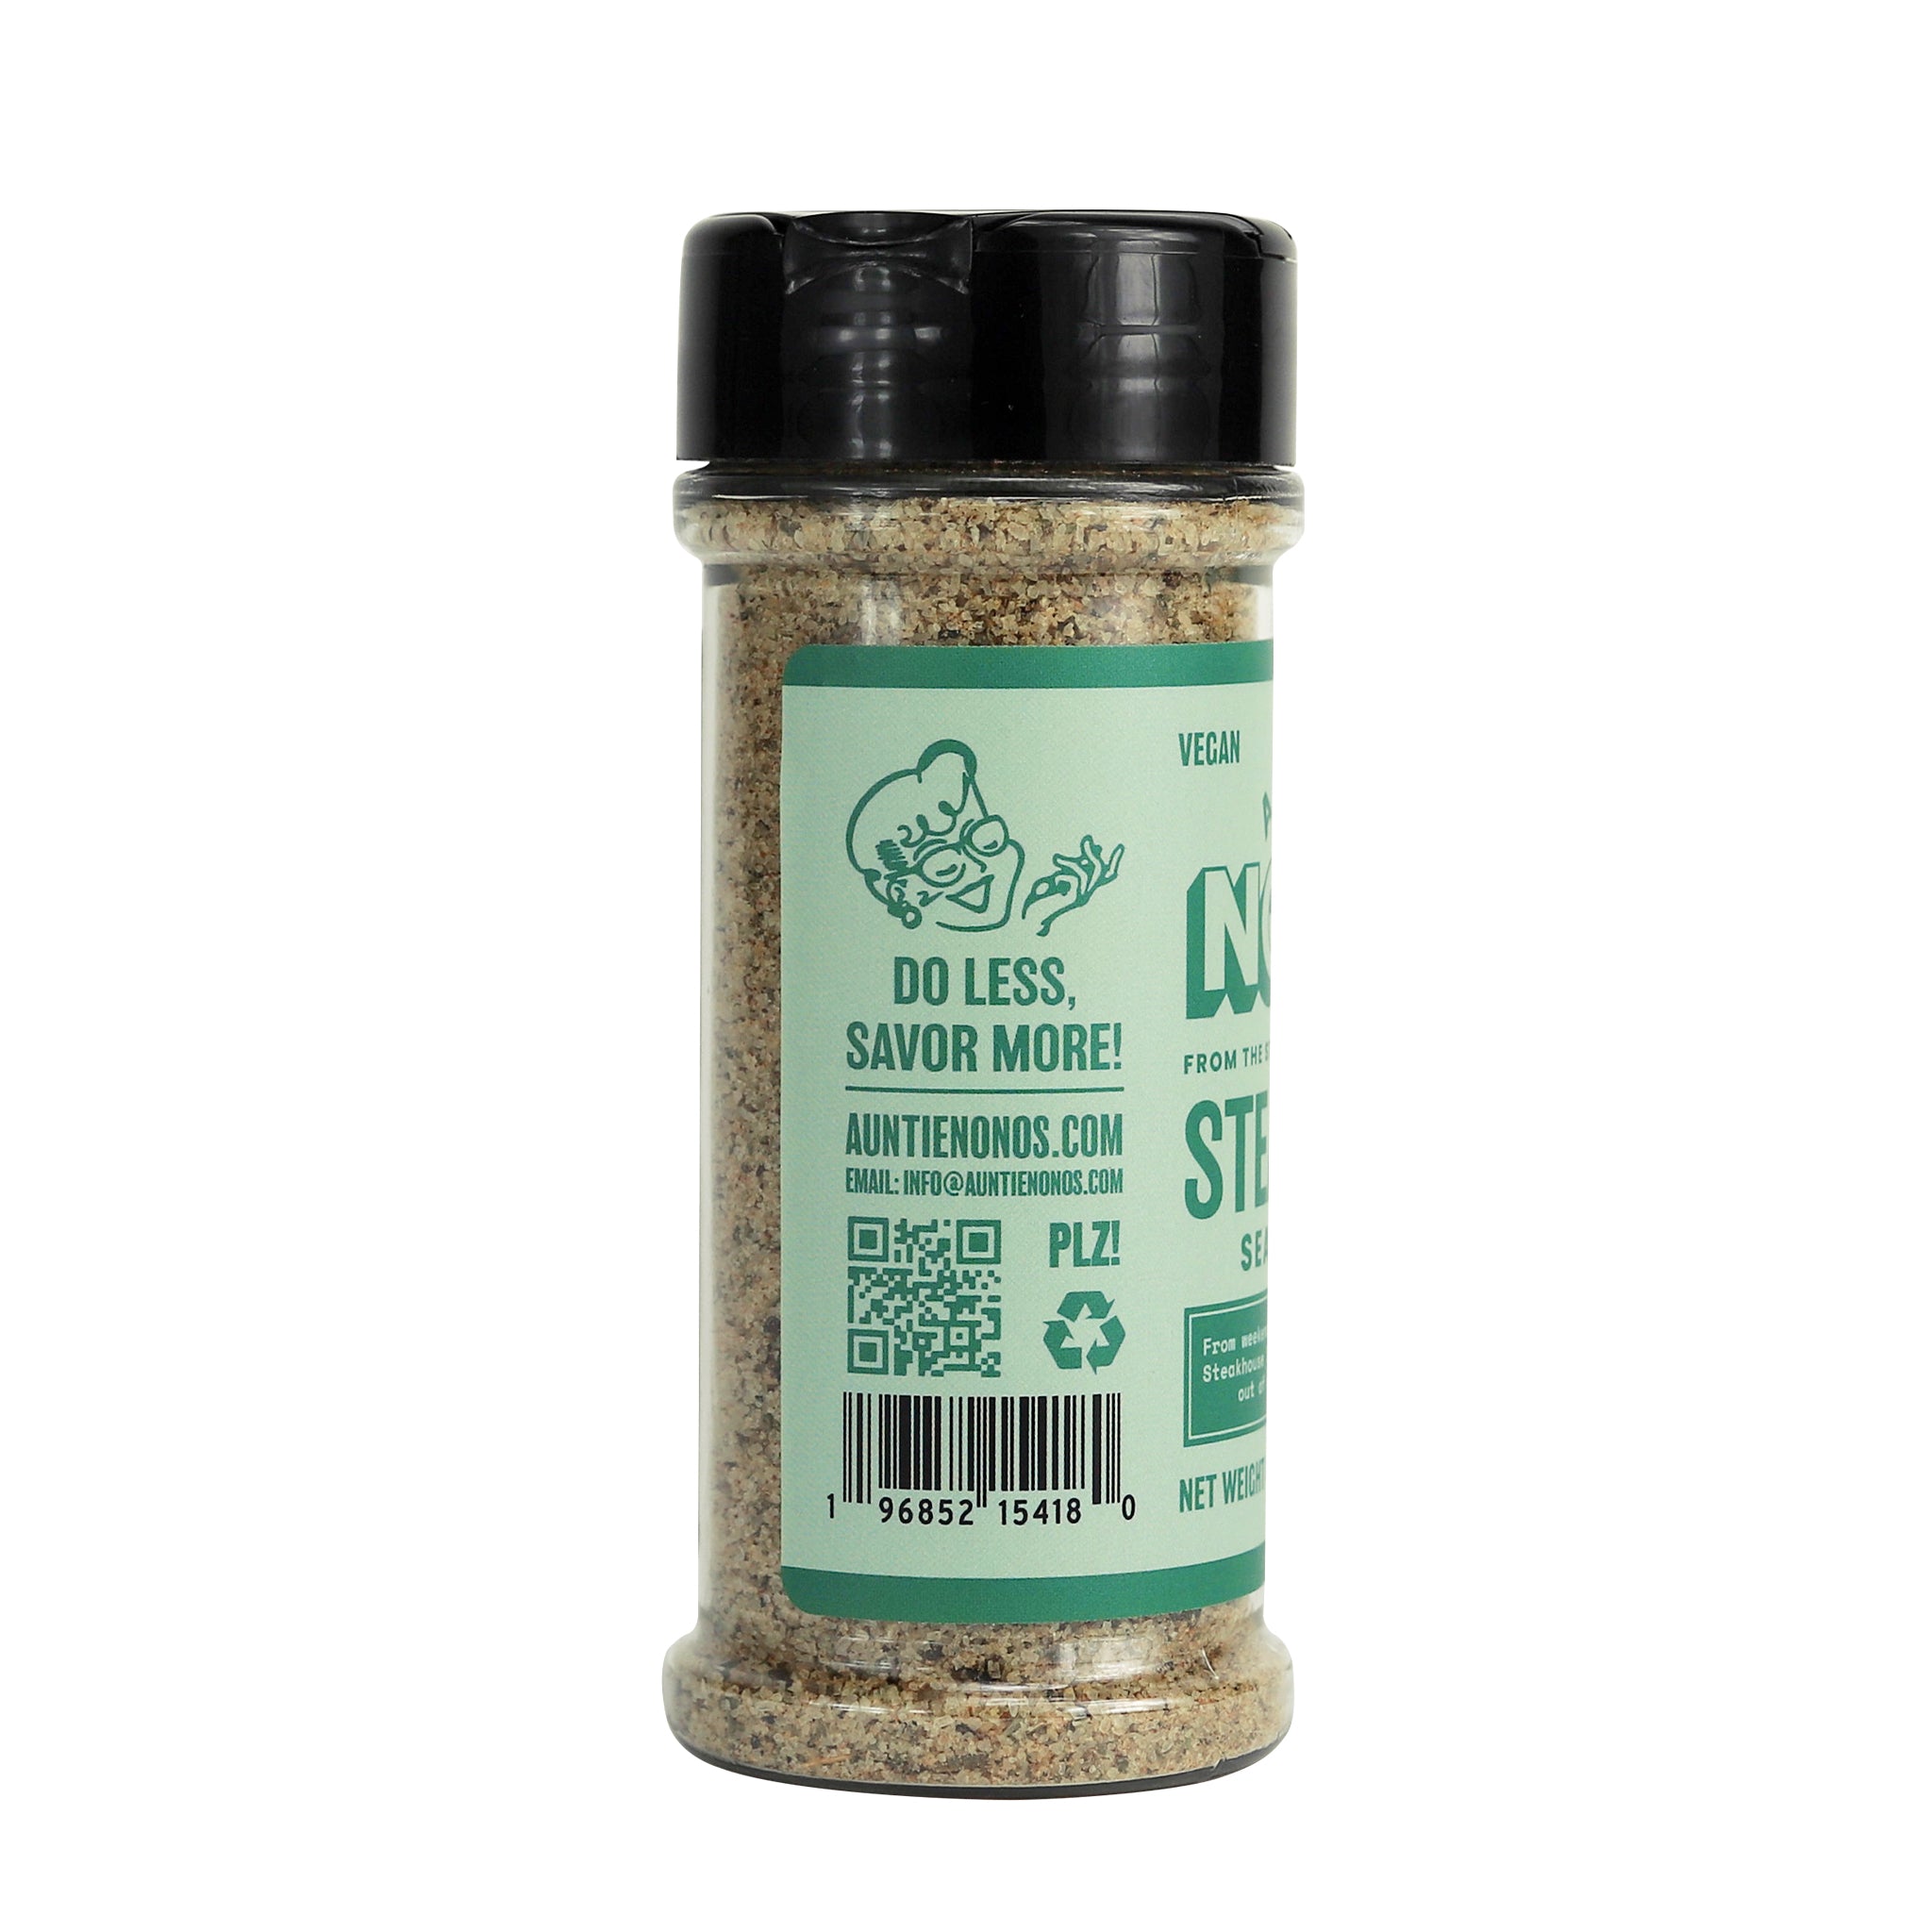 Auntie Nonos Everything Seasoning - Sea Salt Garlic & Onion Powder - Add  Fla